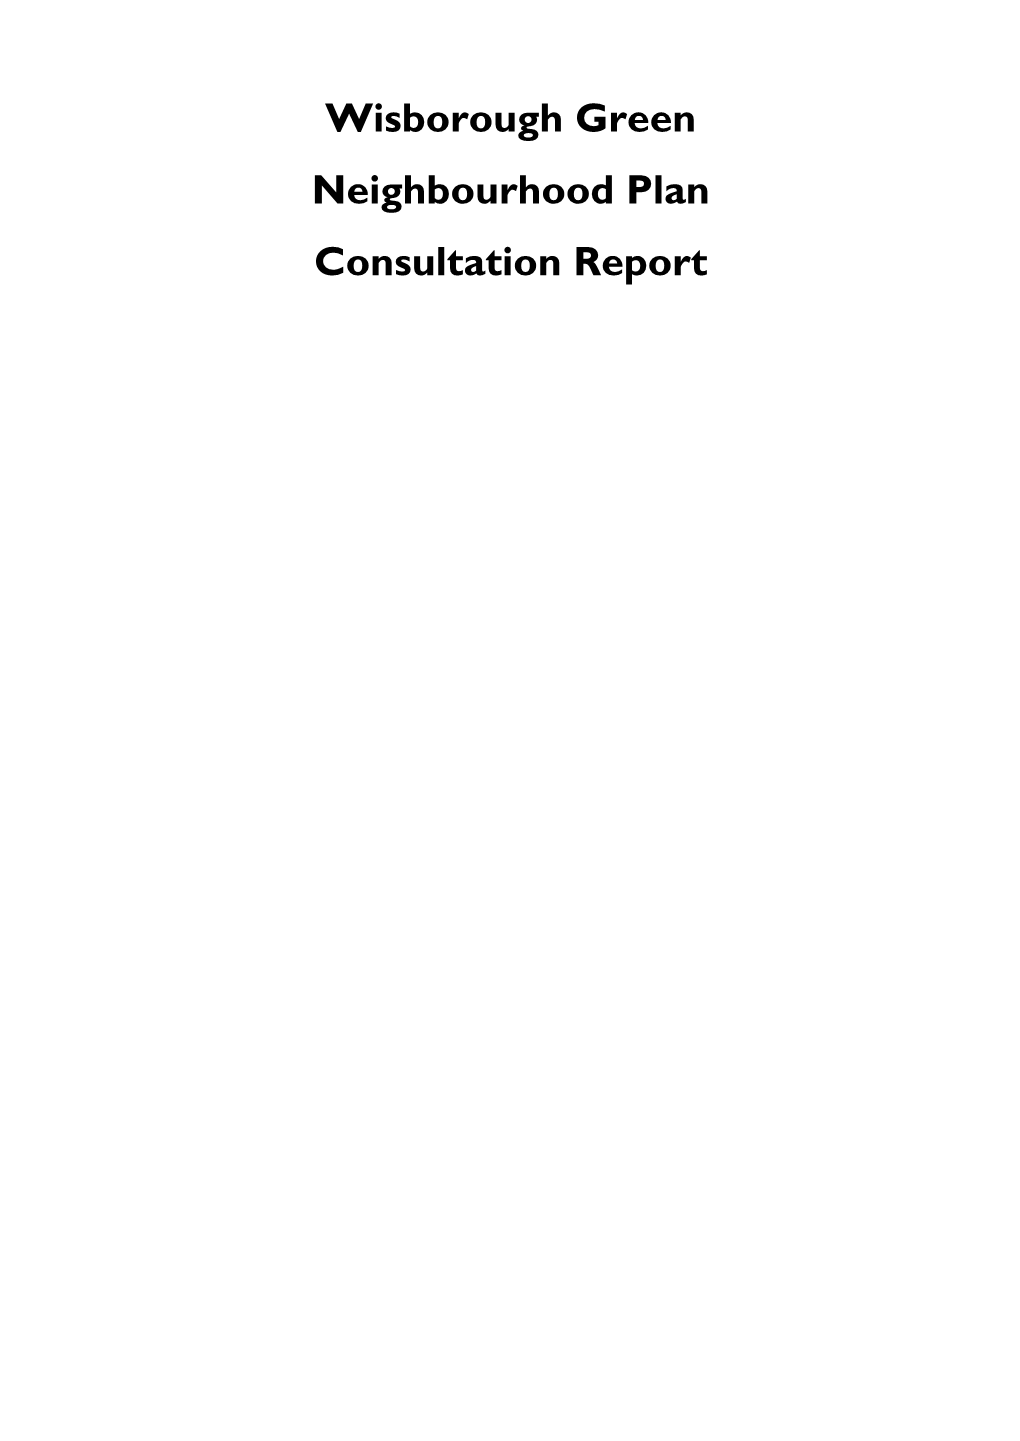 Wisborough Green Neighbourhood Plan Consultation Report